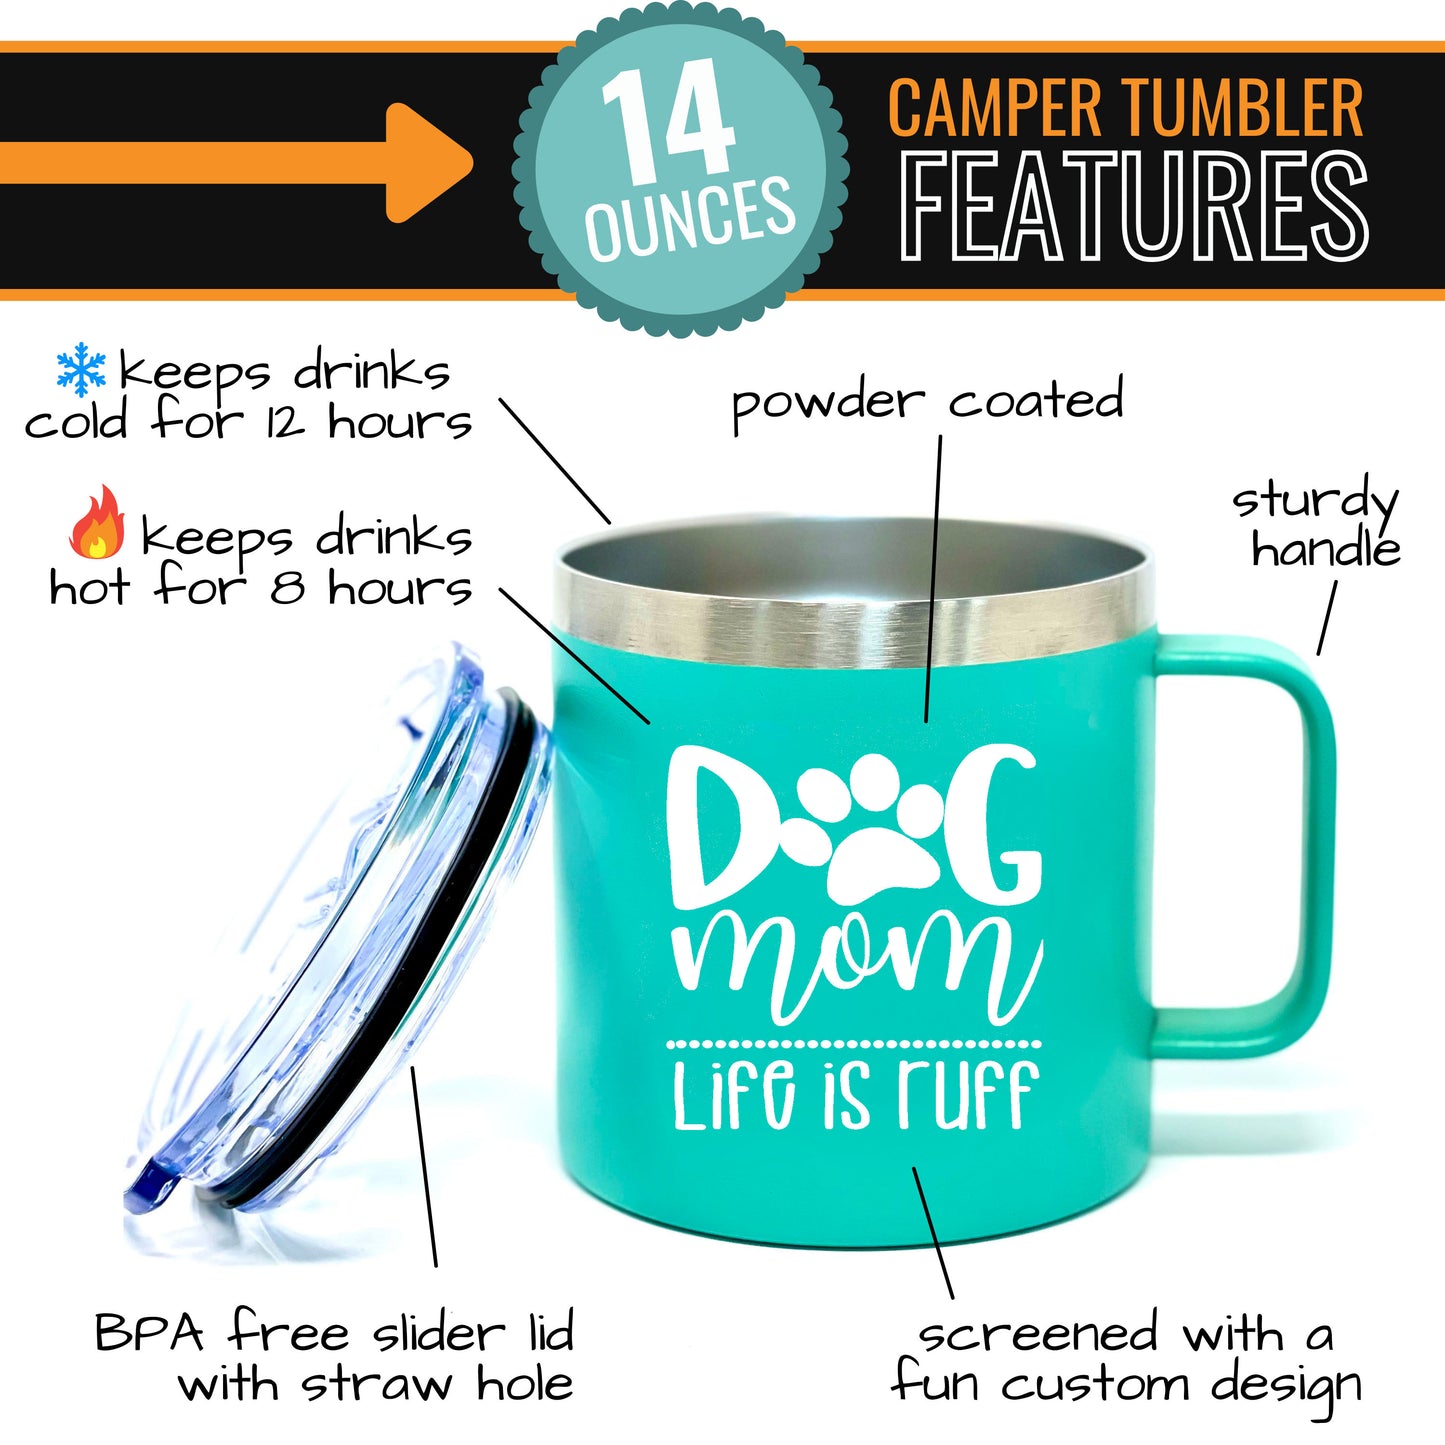 Dog Mom Teal 14 oz Camper Tumbler for Dog Lovers